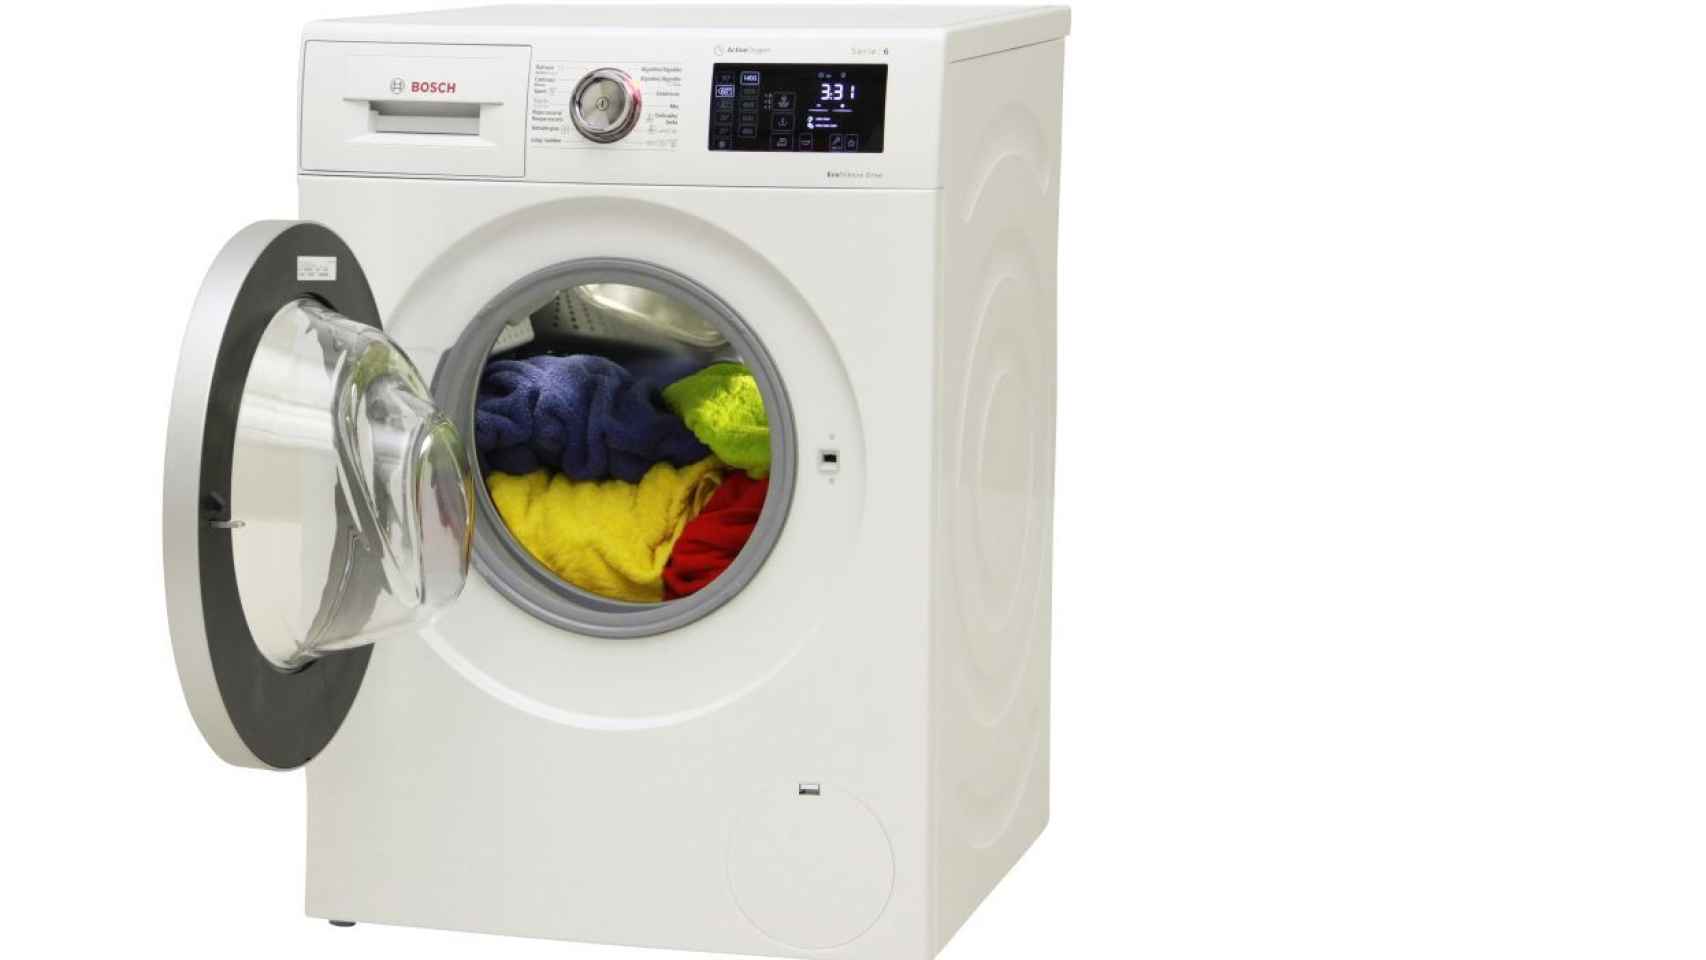 va a comprar una lavadora, lista con las 15 más calidad: el mejor electrodoméstico